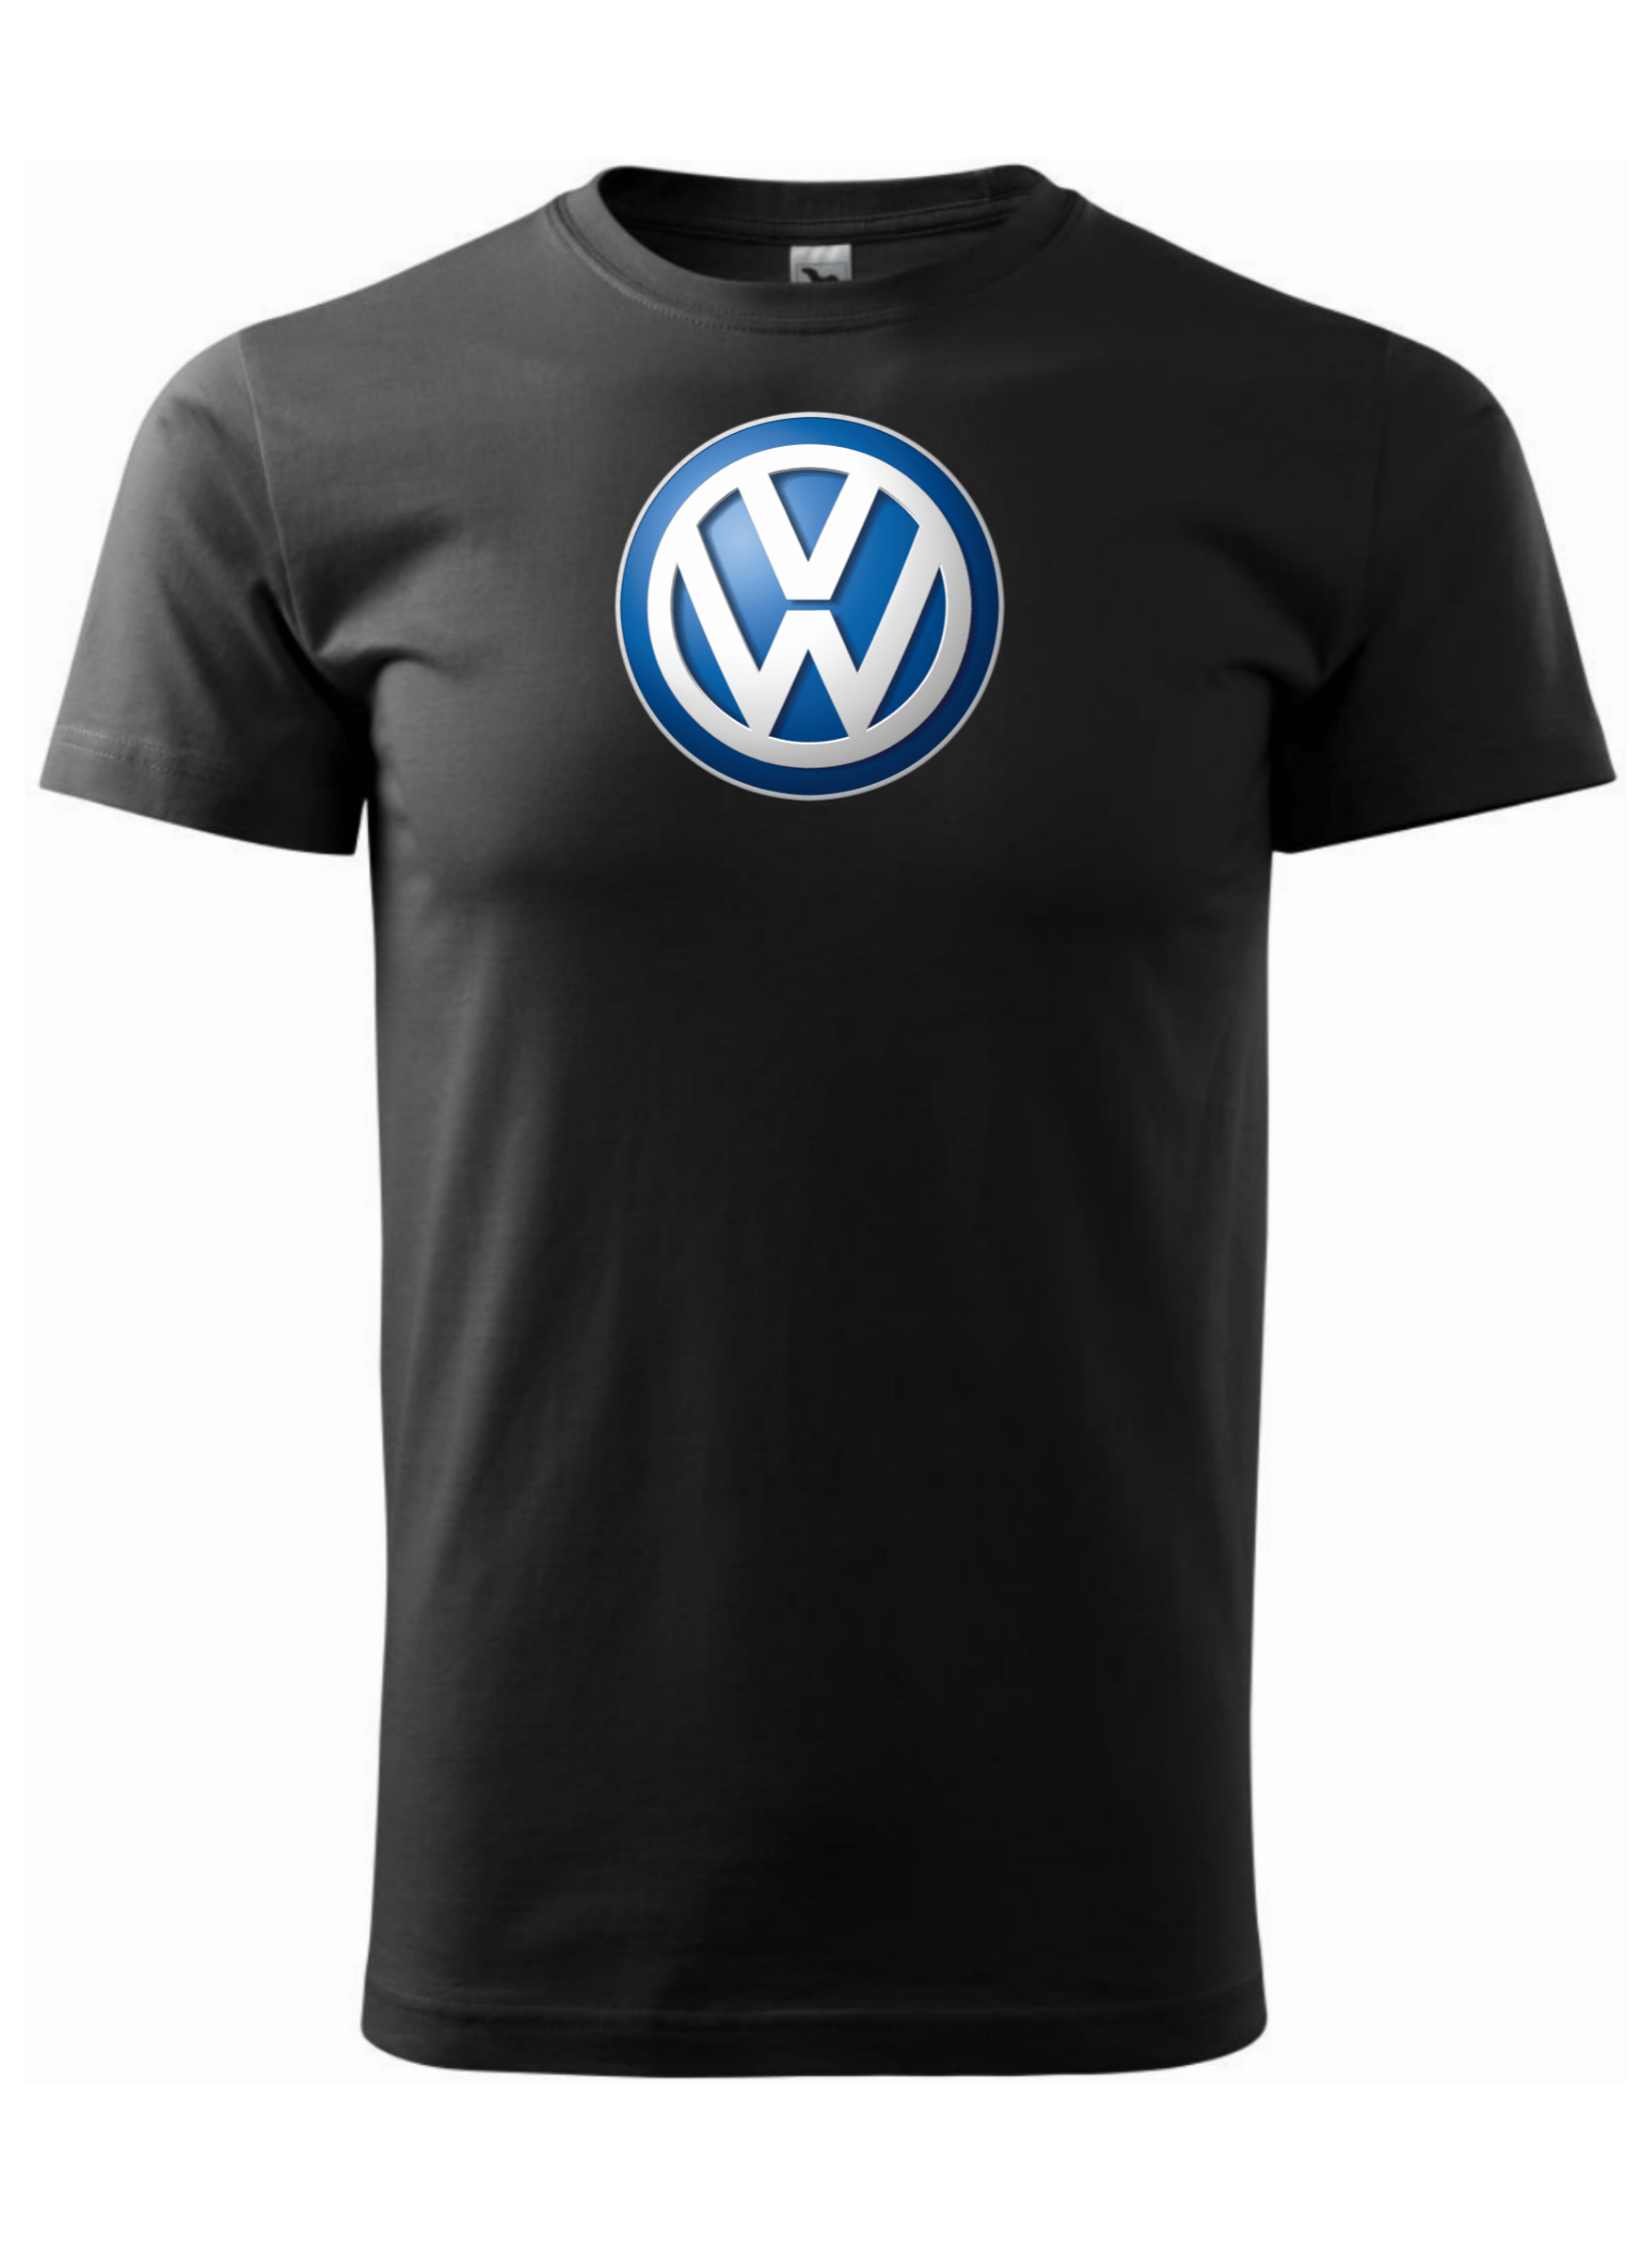 Pánské tričko s potiskem značky Volkswagen